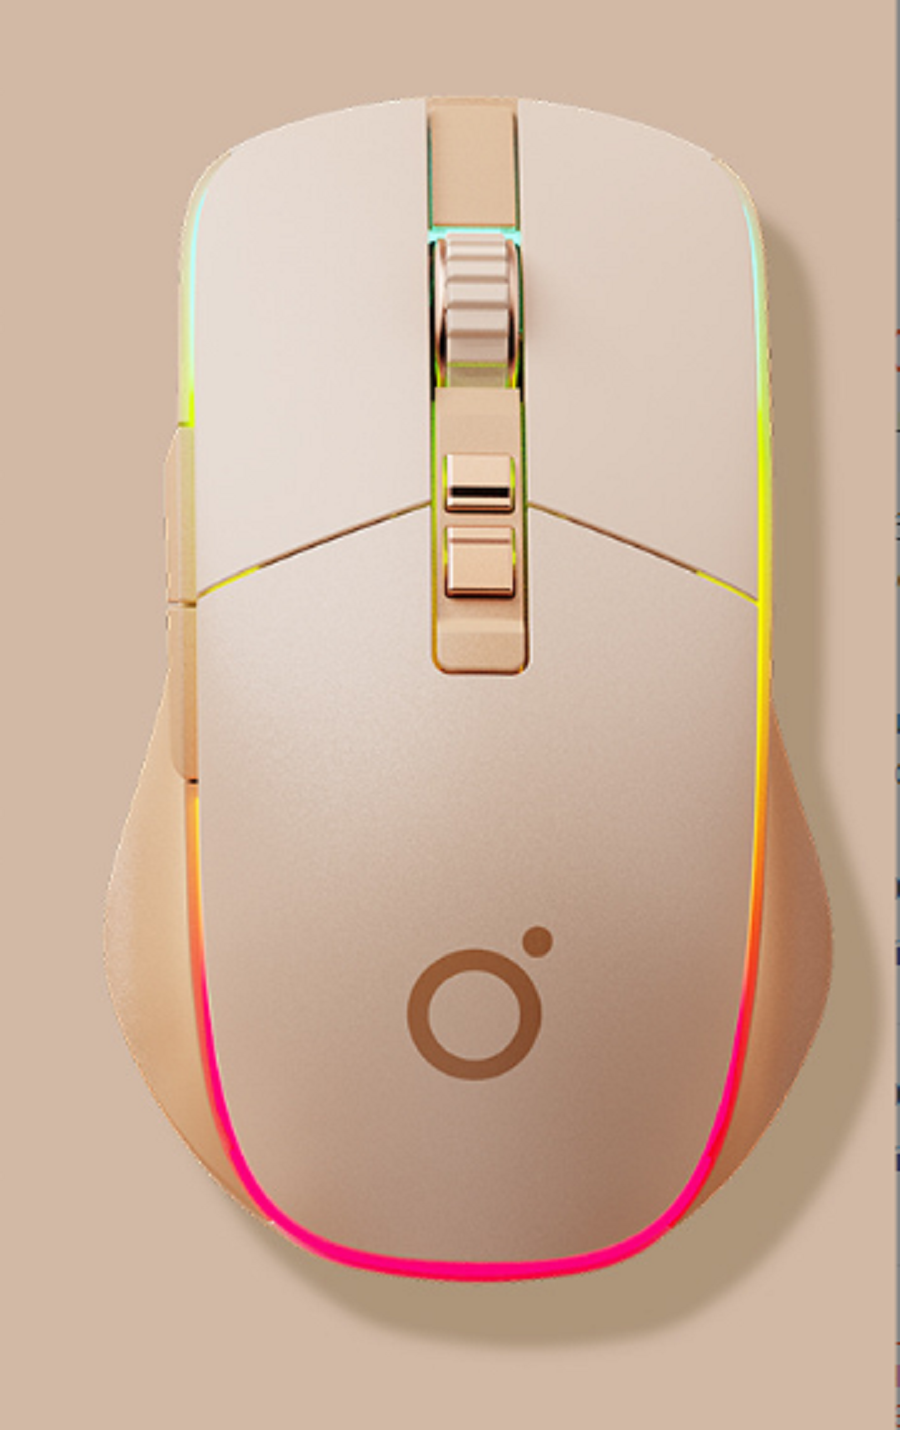 Мышь G308 игровая бесшумная трехрежимная розовая